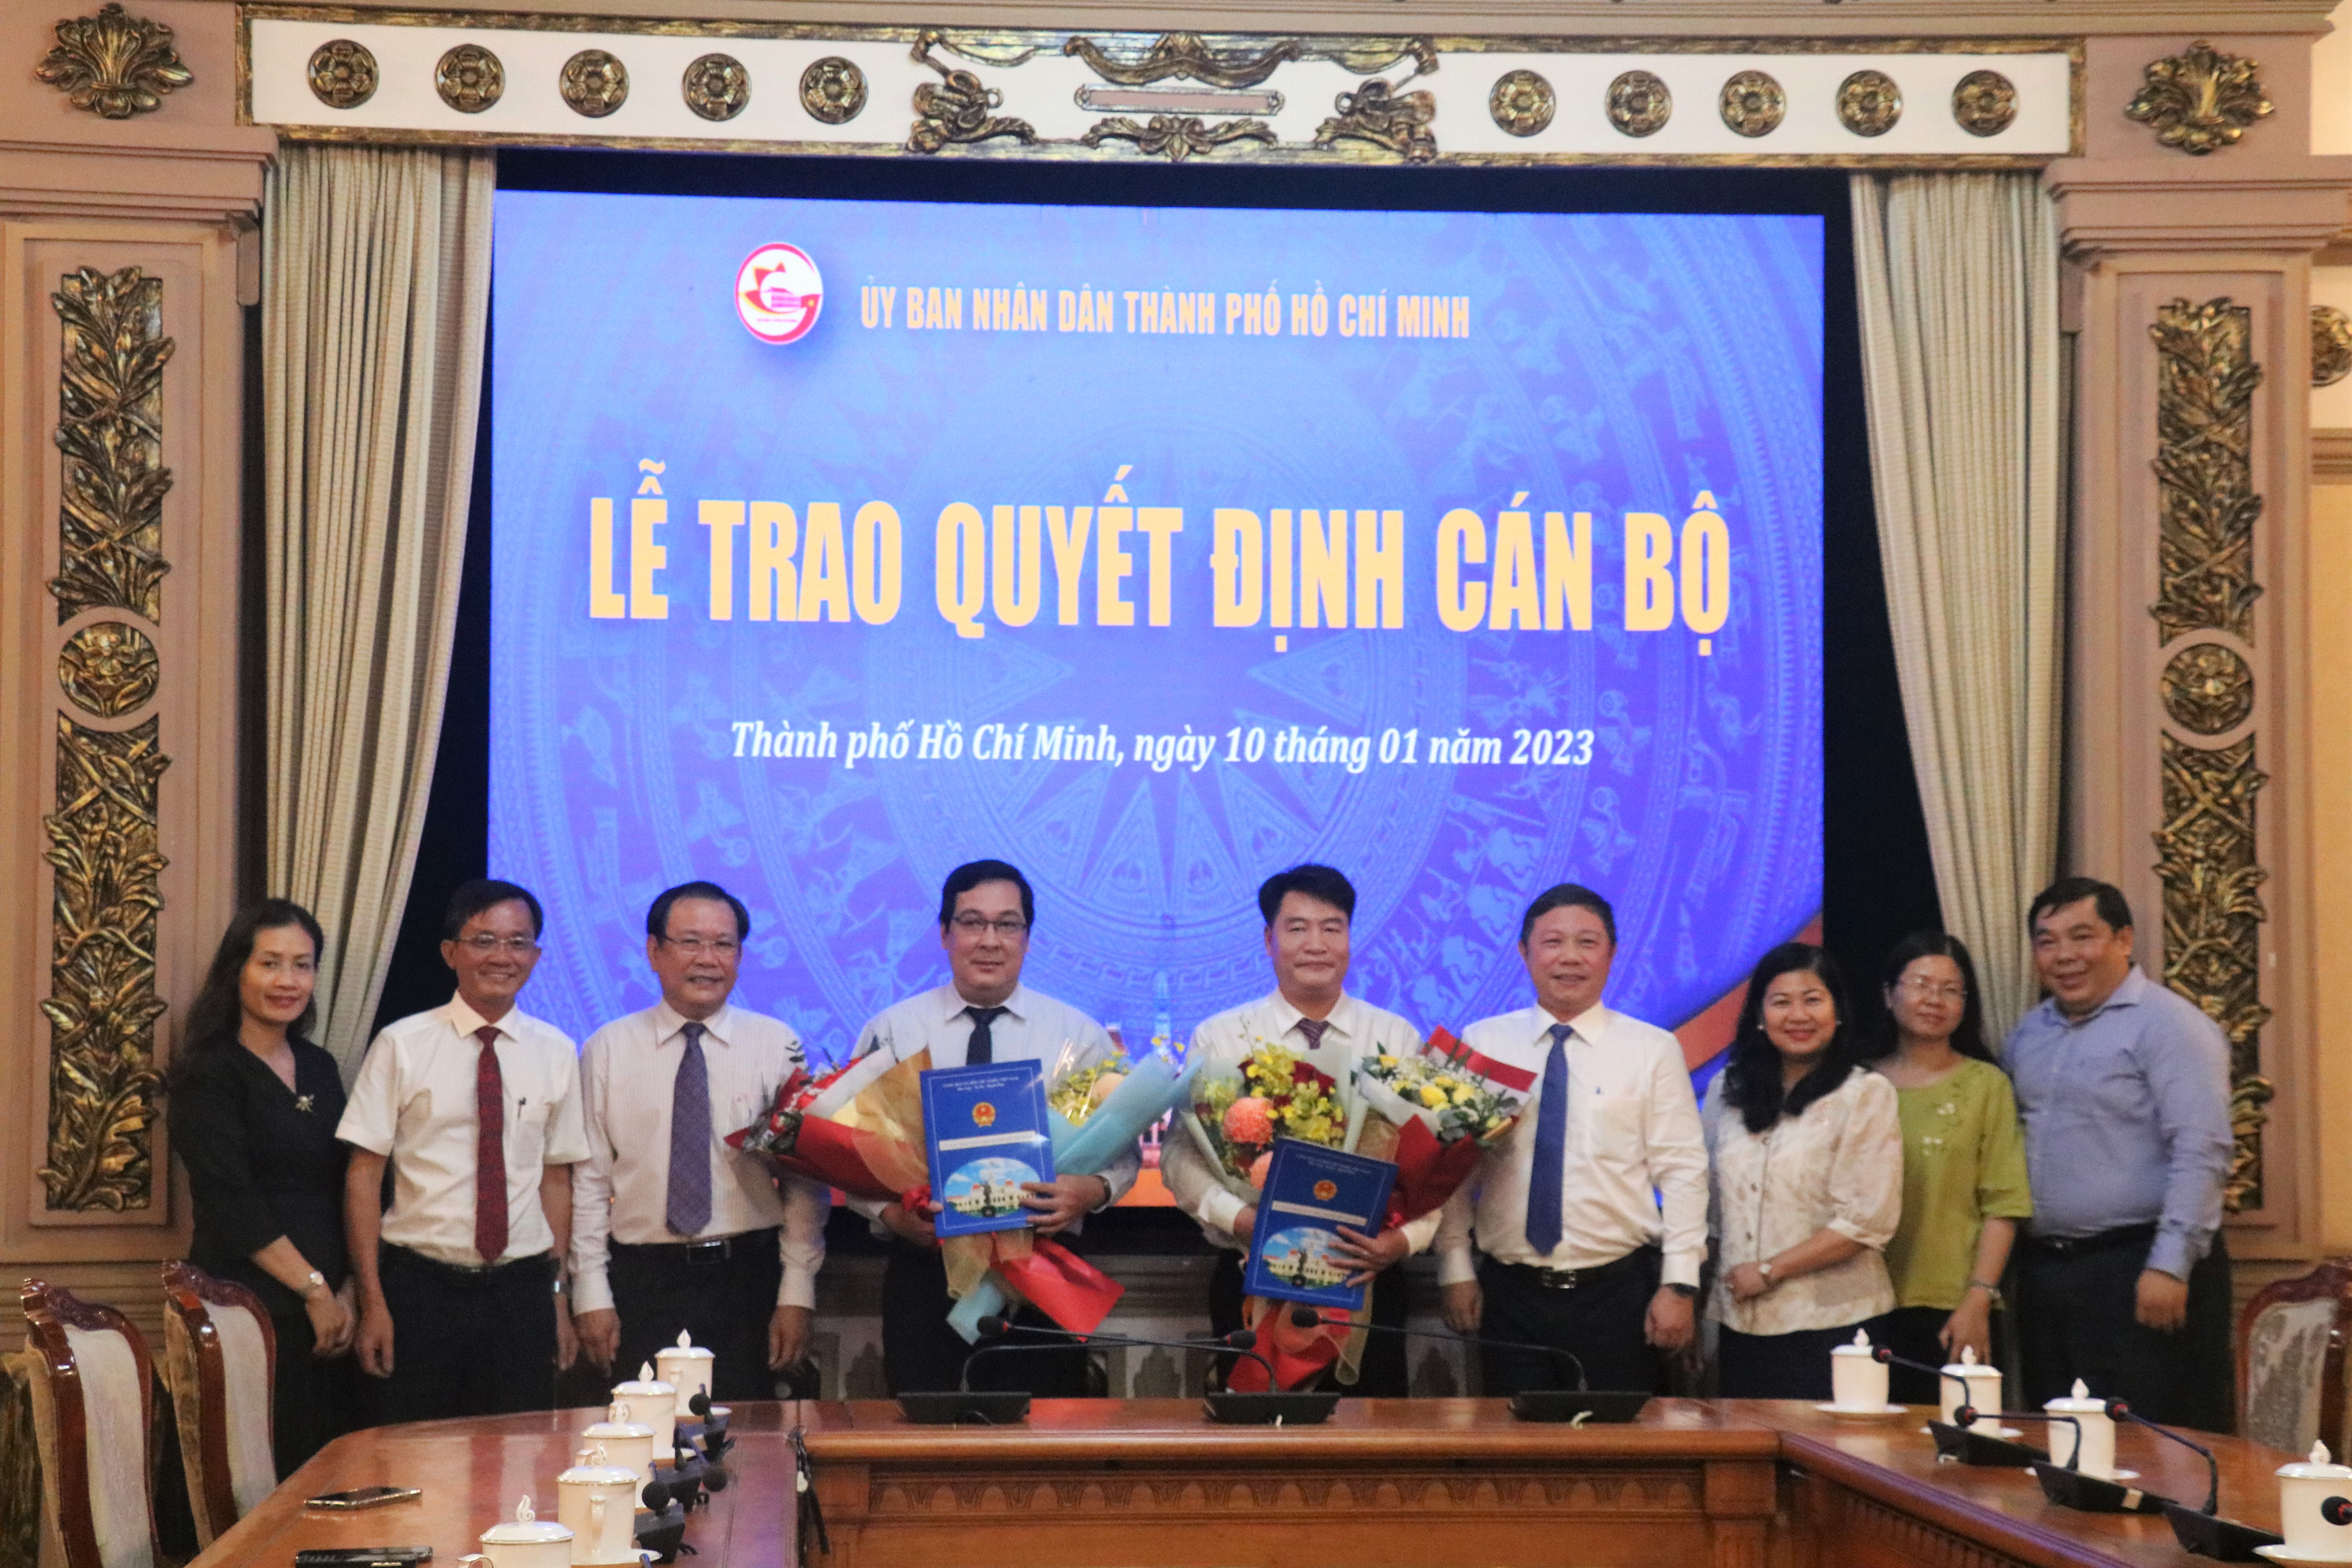 Nhà báo Đinh Đức Thọ và Nguyễn Thái Bình làm phó tổng biên tập báo Pháp Luật TP.HCM - Ảnh 1.